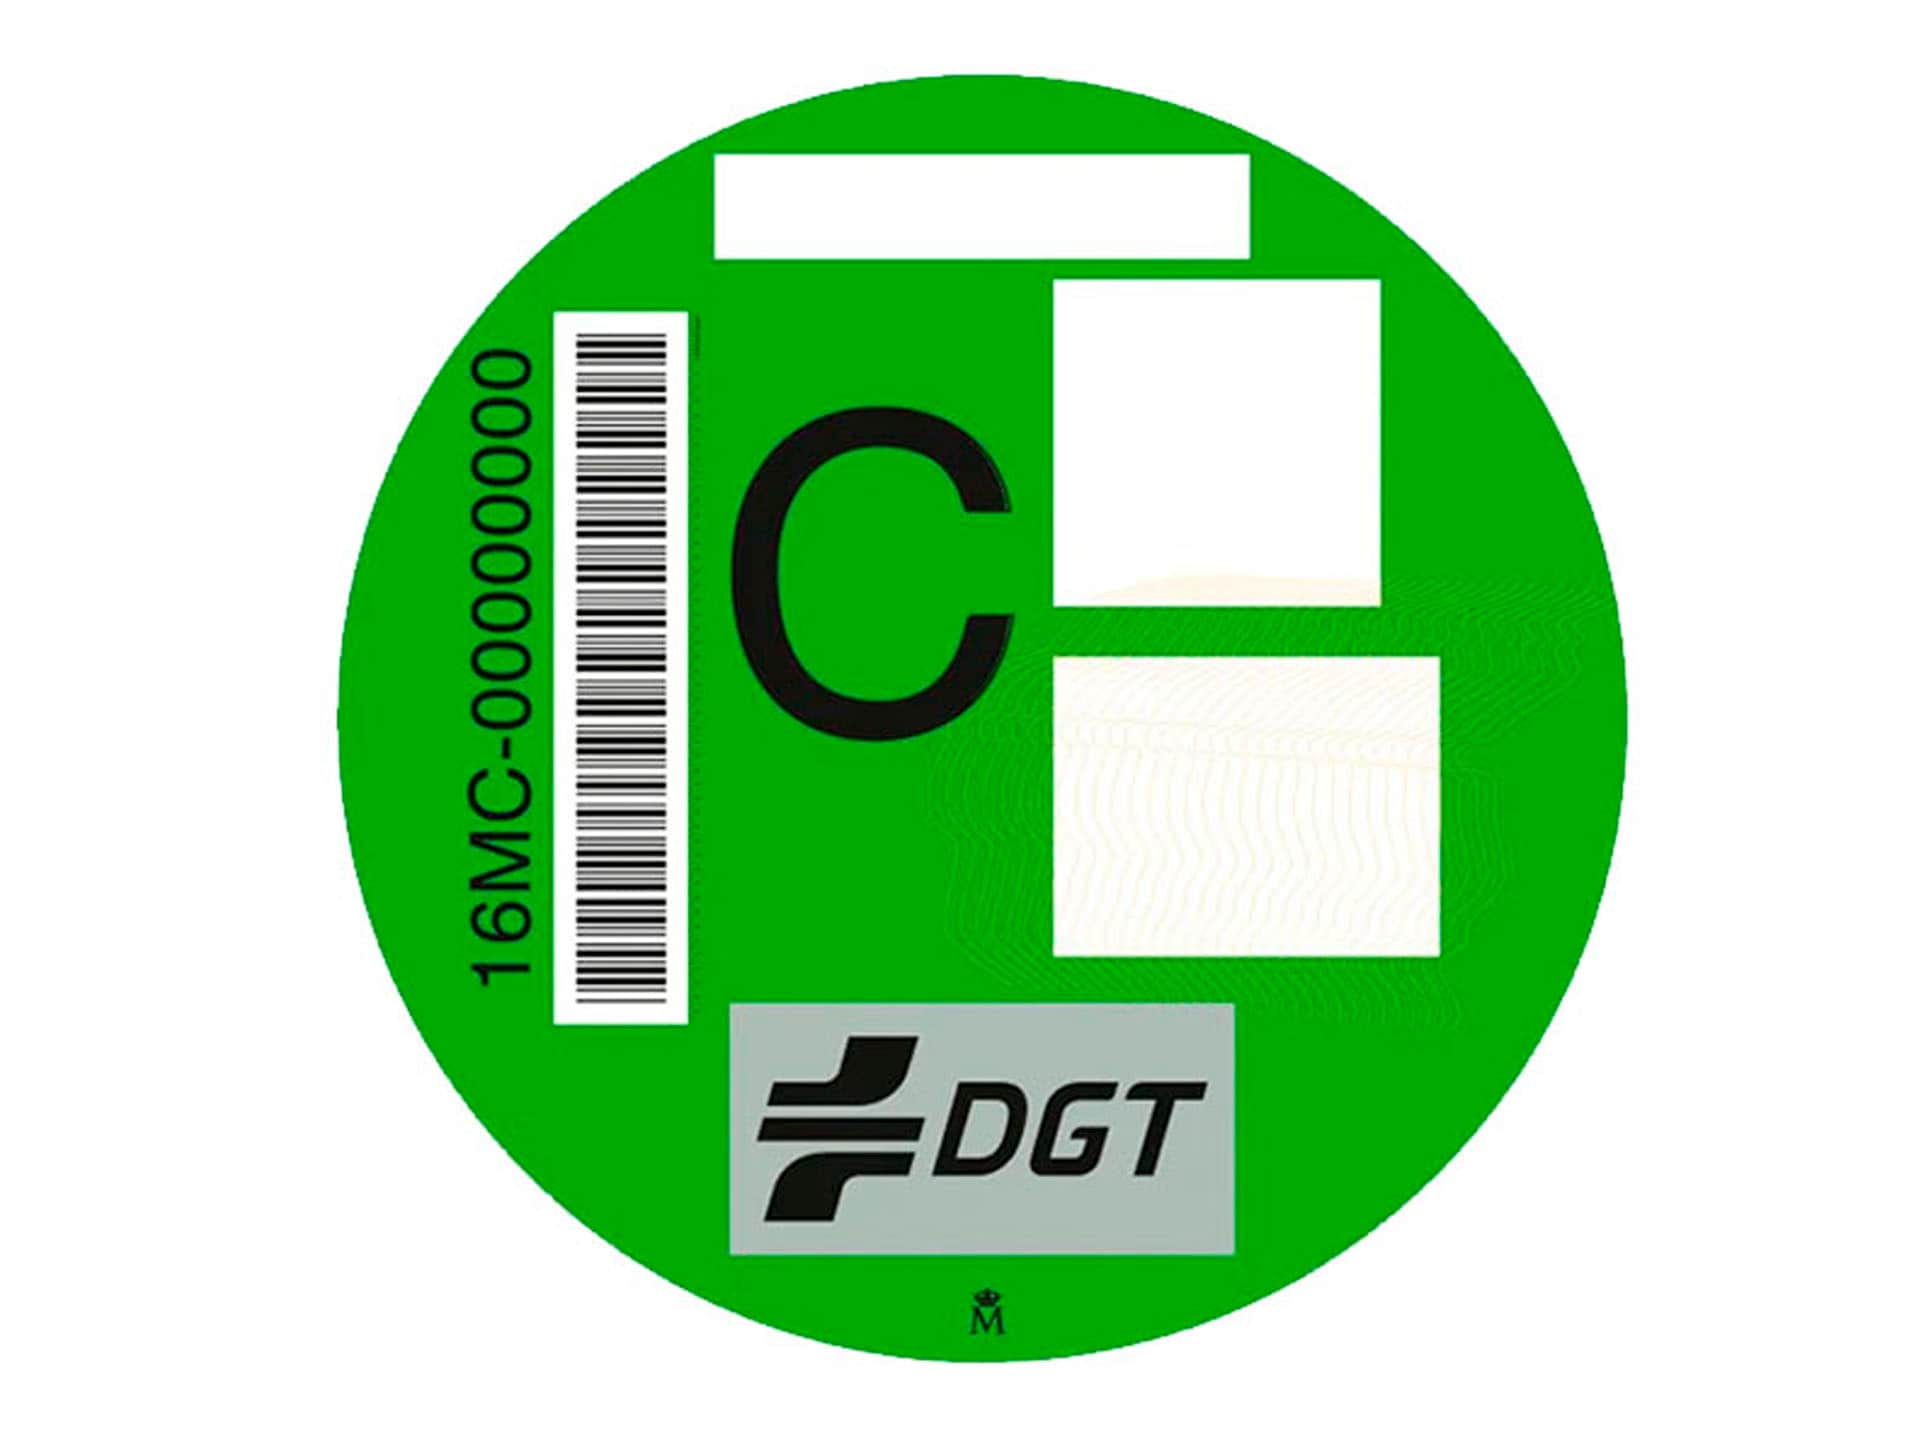 DGT - Etiqueta ambiental C (Verde)